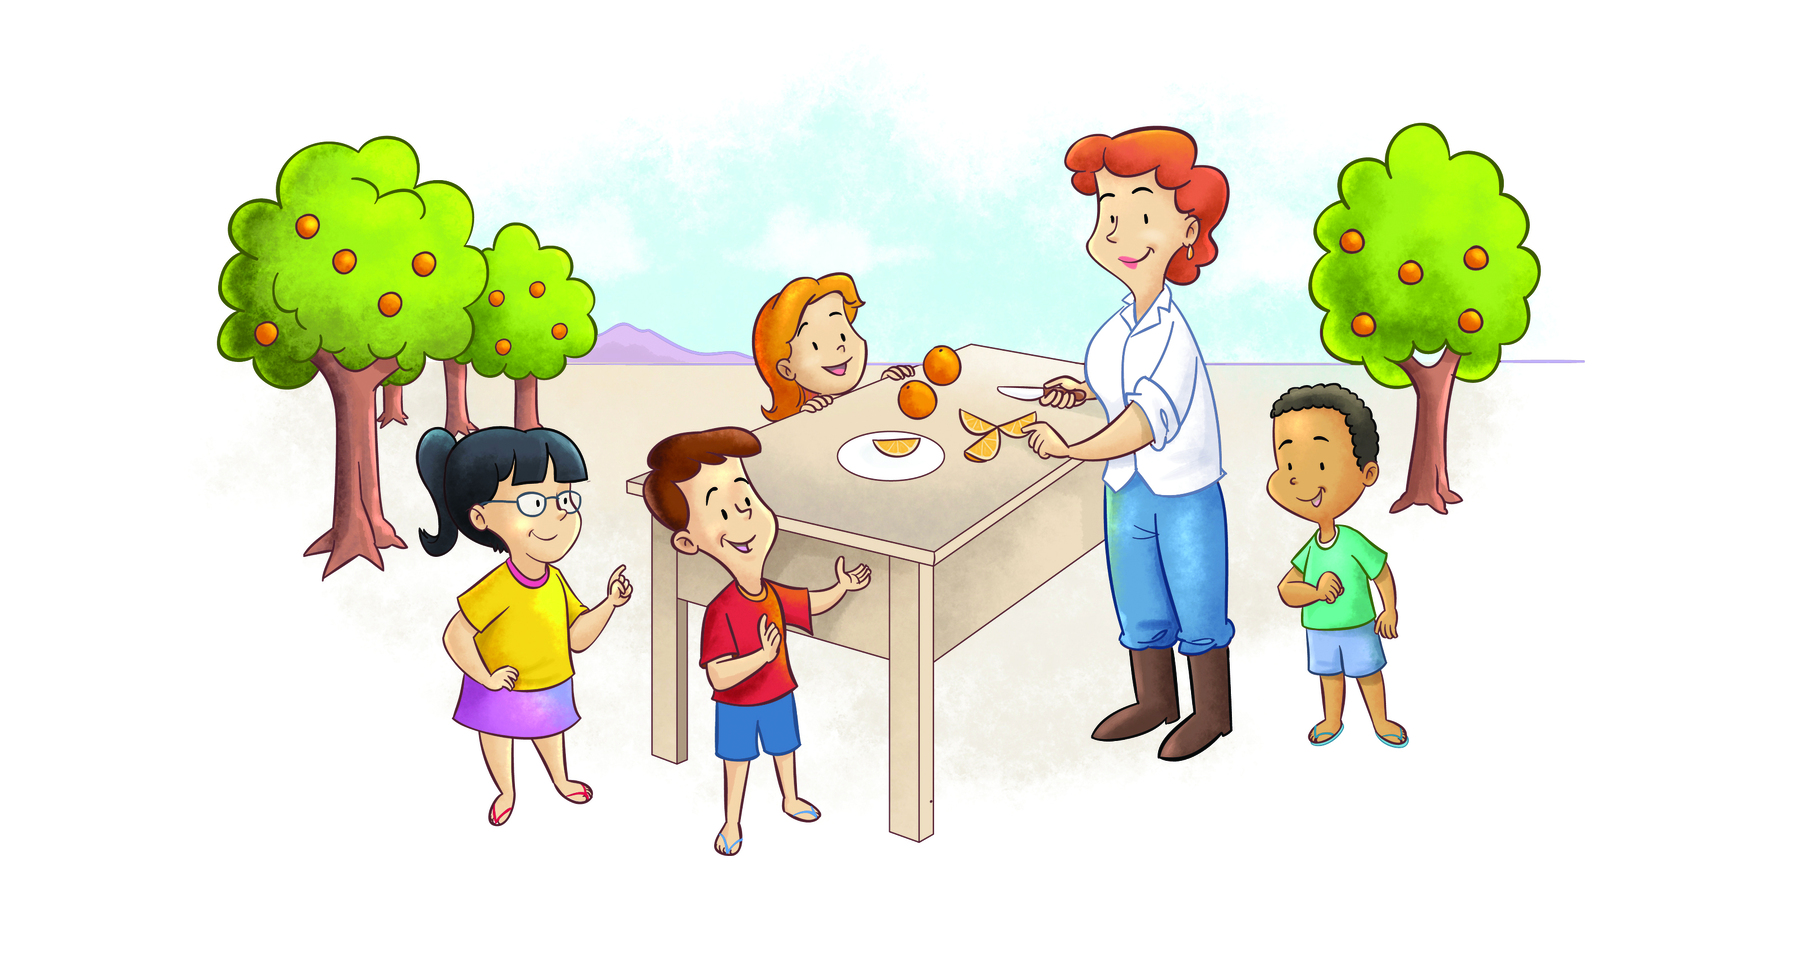 Ilustração. ao centro da imagem há uma mulher branca de cabelo vermelho e curto, camisa branca, calça azul e botas. Ela está à frente de uma mesa com laranjas. Ao redor, quatro crianças: um menino branco com camiseta vermelha, uma menina branca com cabelo preto e óculos, uma menina branca e loira, e um menino negro com camiseta verde. Ao fundo, árvores com laranjas, algumas à esquerda e uma à direita.